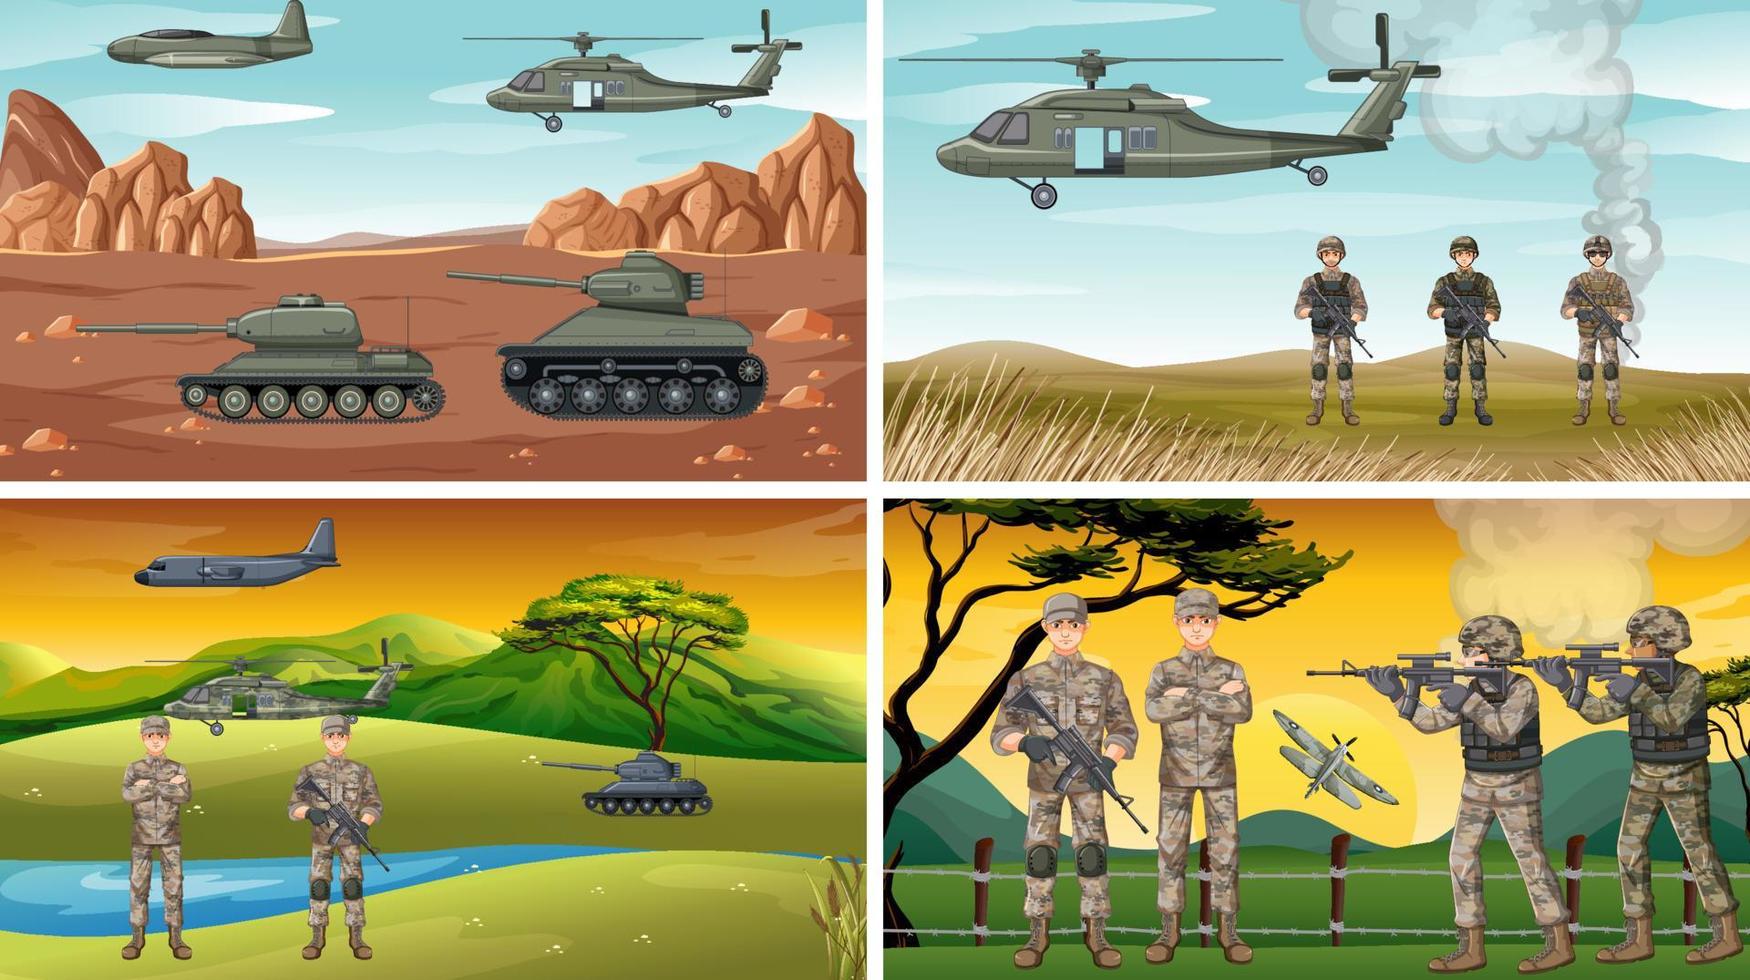 set di diverse scene di guerra dell'esercito vettore